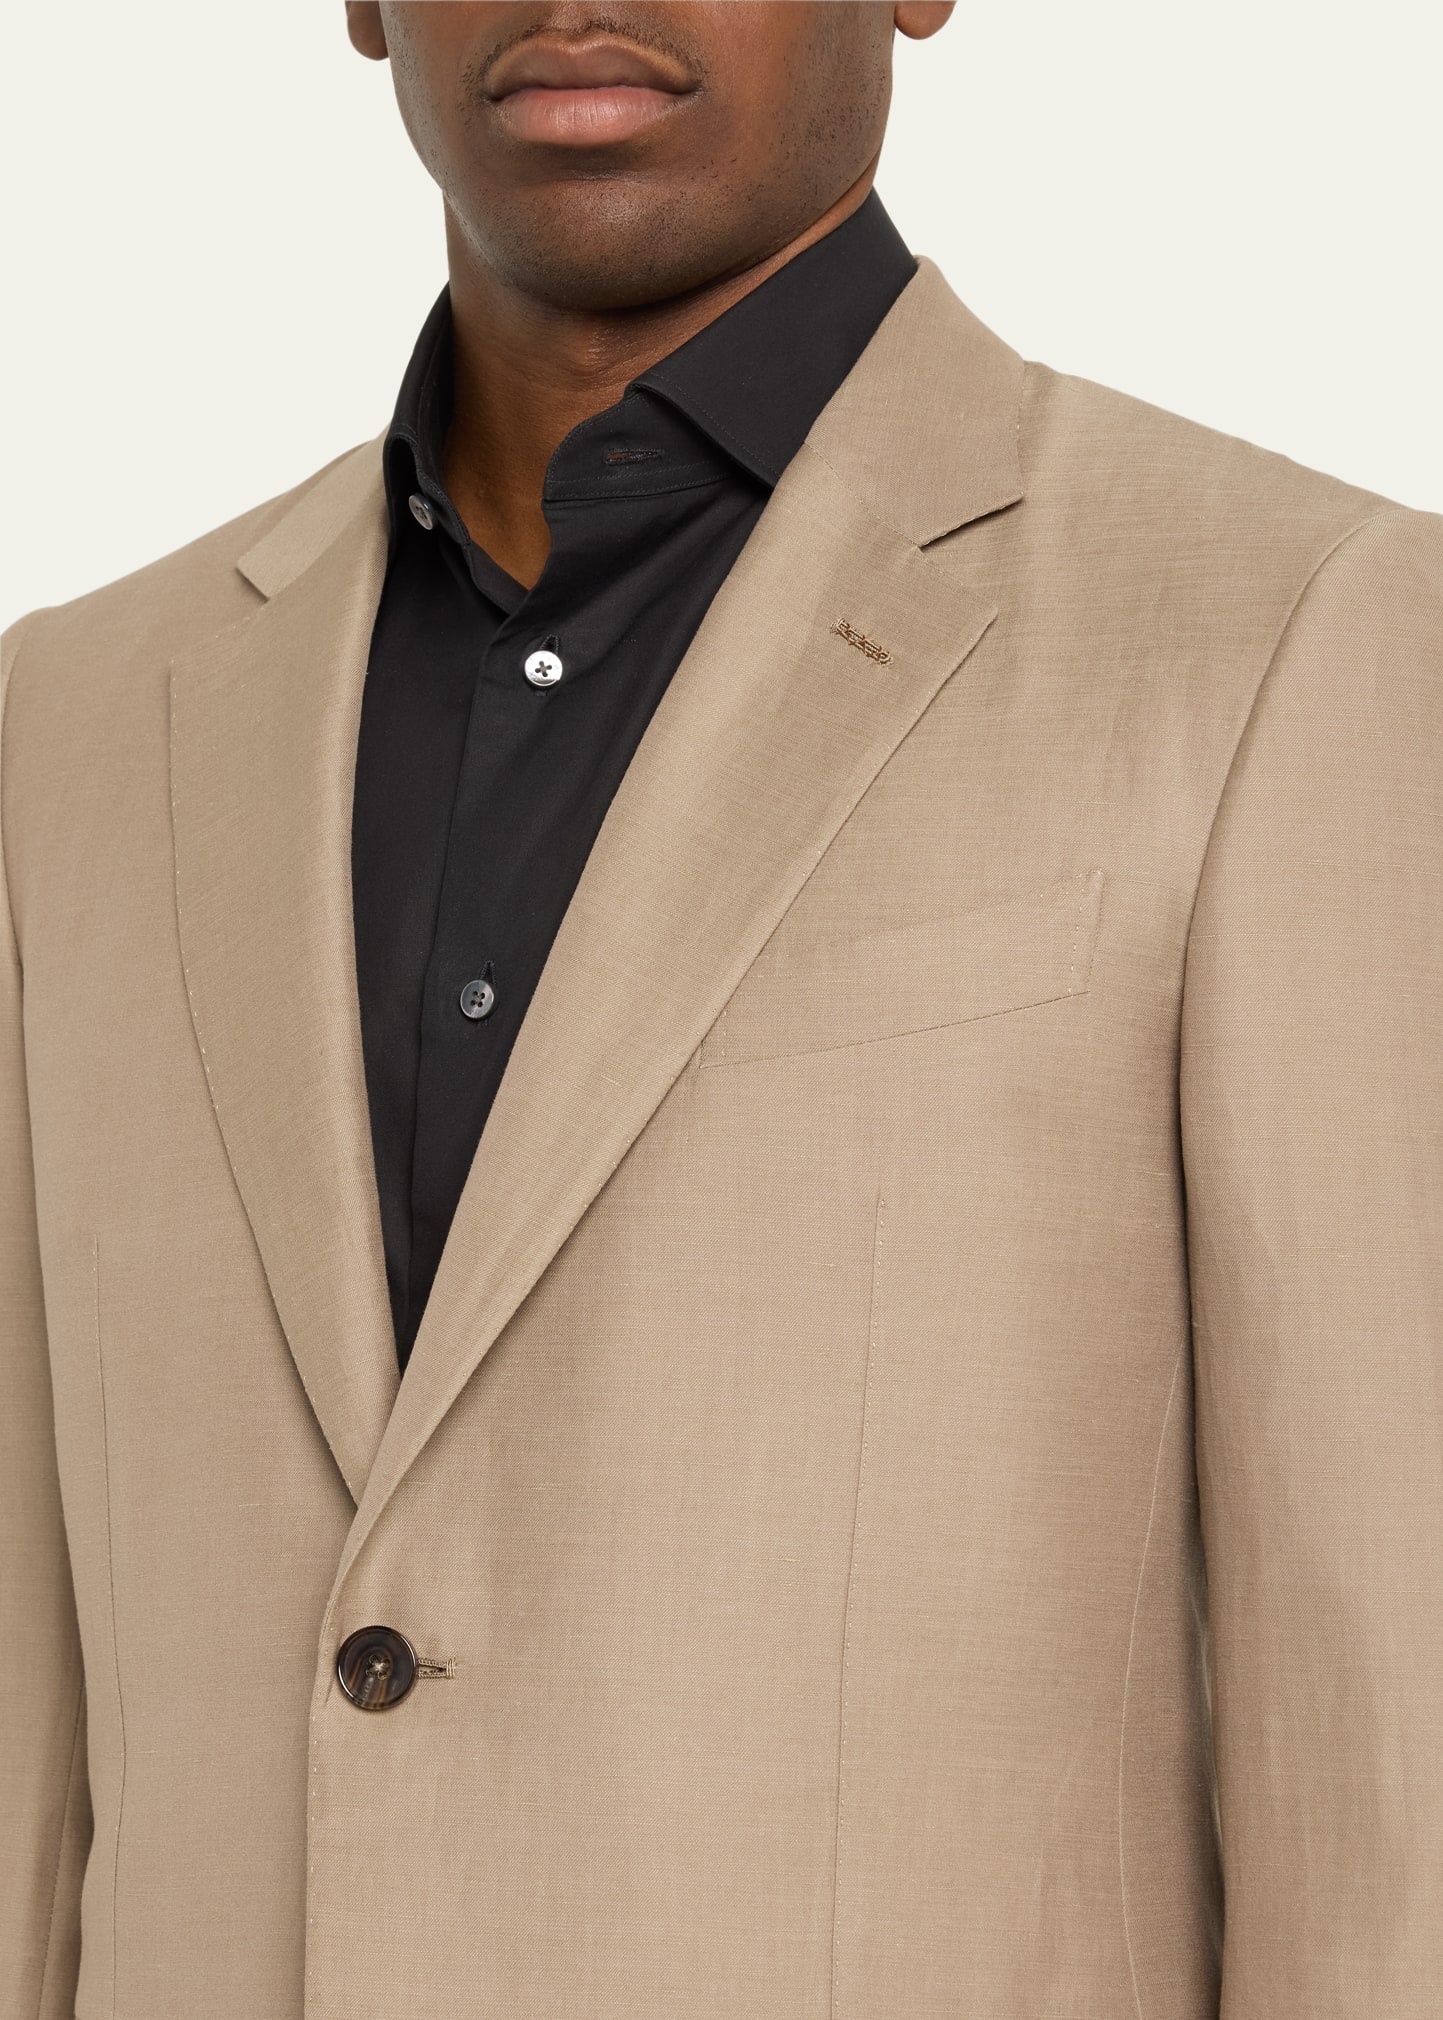 Men's Centoventimila Wool-Linen Suit - 5